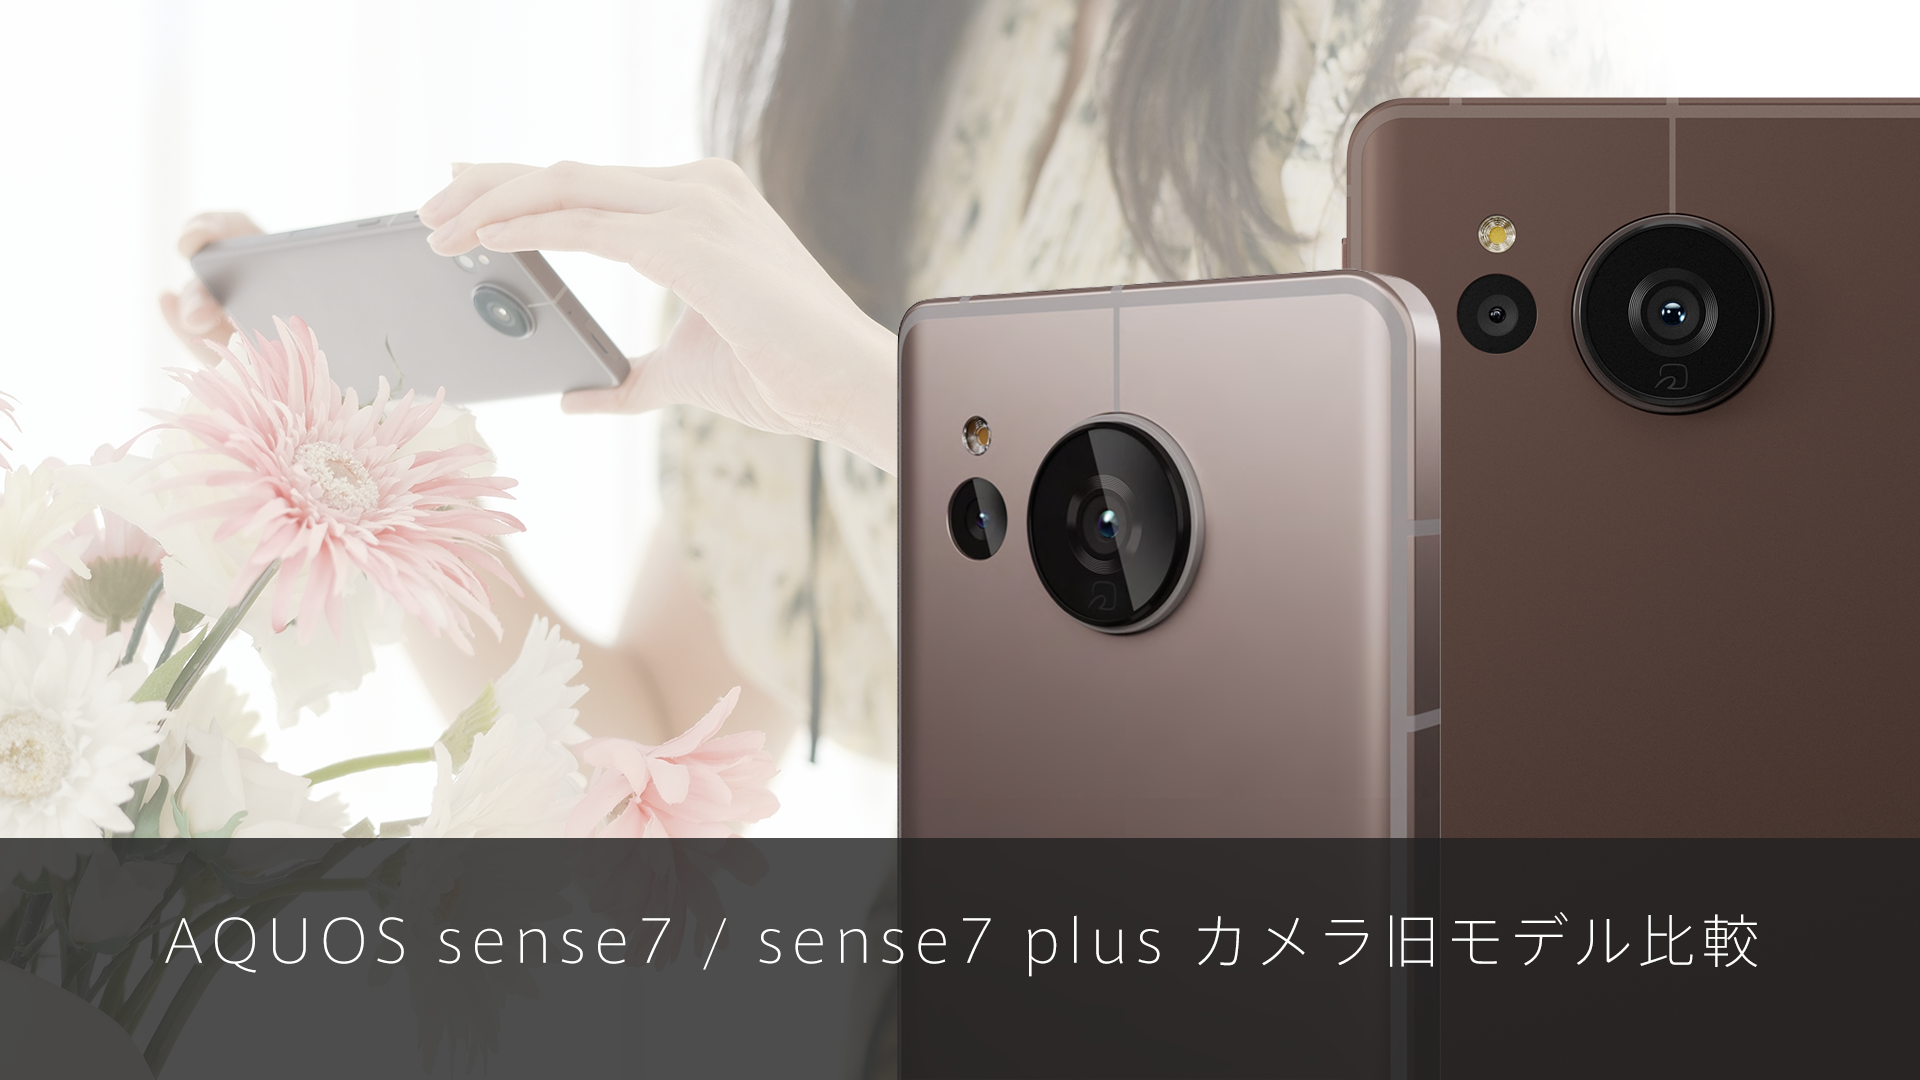 特集記事 AQUOS sense7 / sense7 plus カメラ旧モデル比較を更新しました